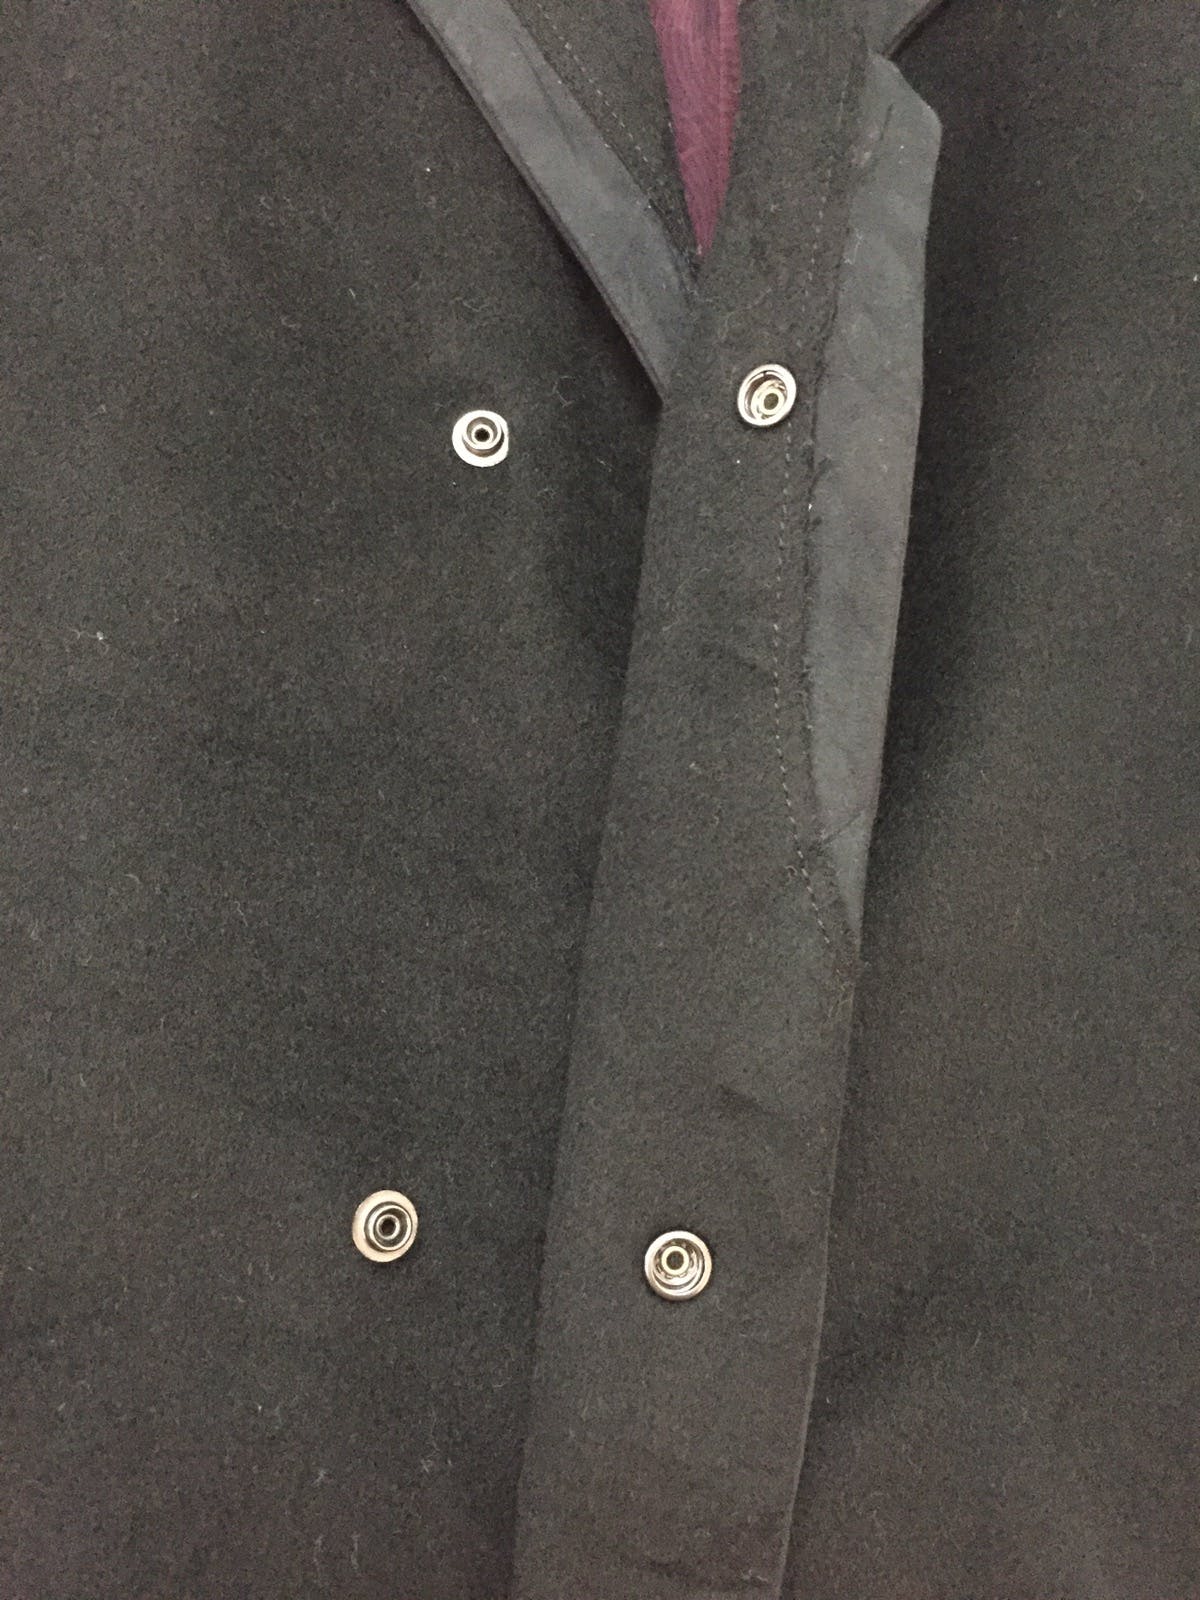 N.Hoolywood Turfting Stitch Double Collar Long Jacket Coat - 14